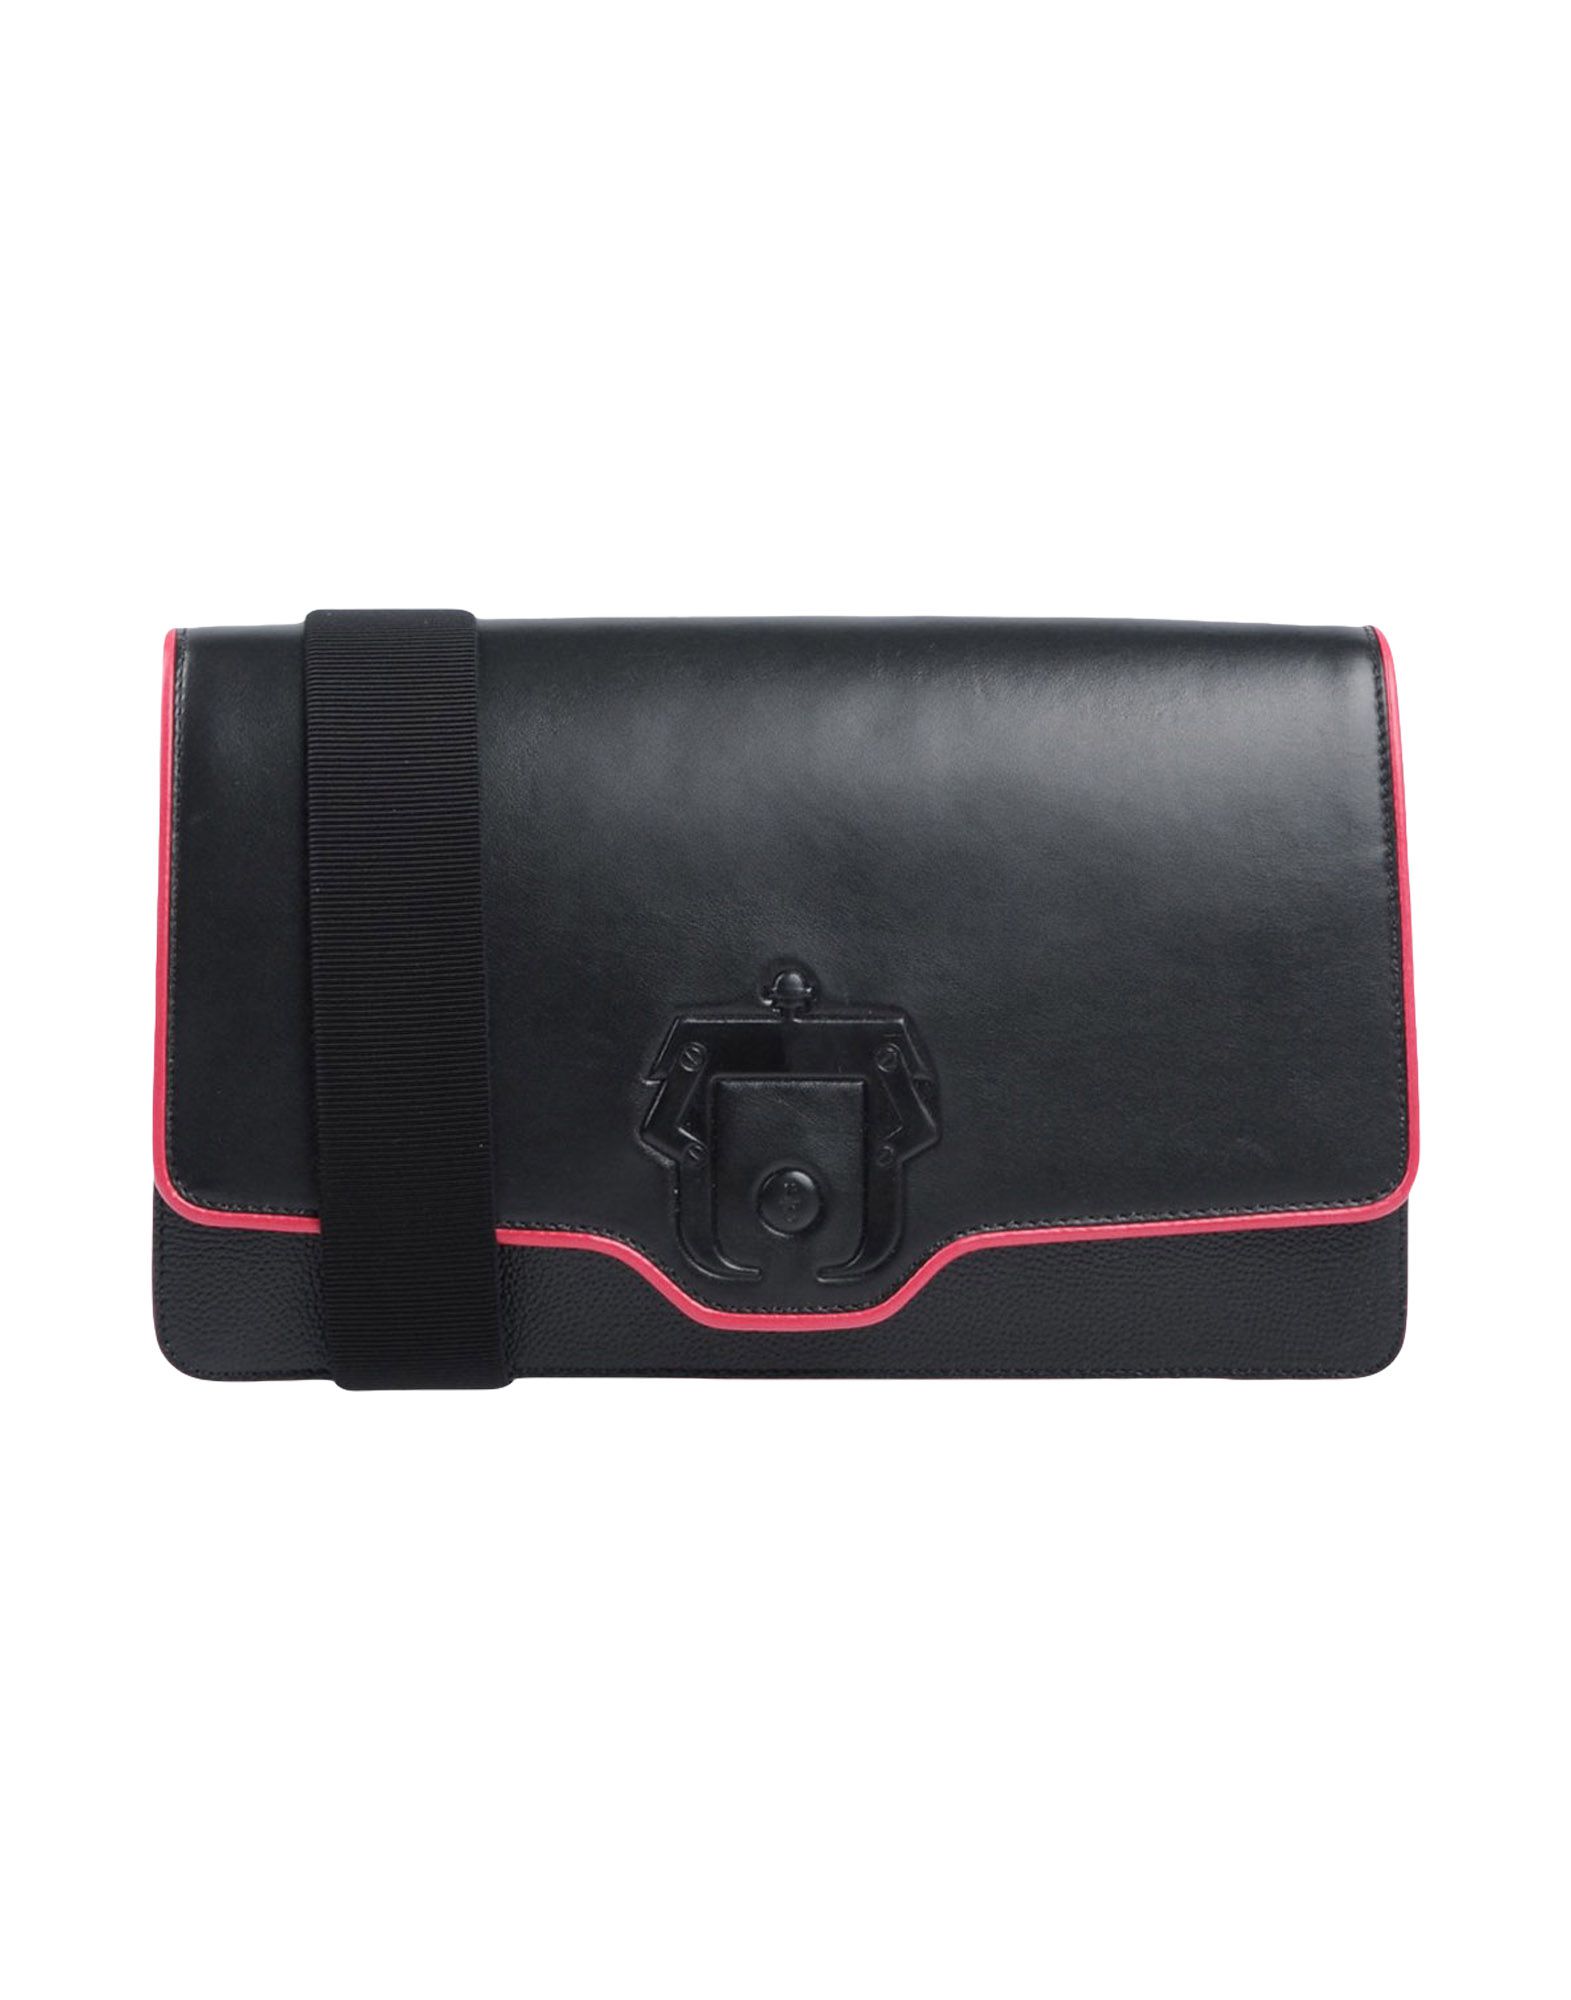 PAULA CADEMARTORI Handbag,45403255NG 1